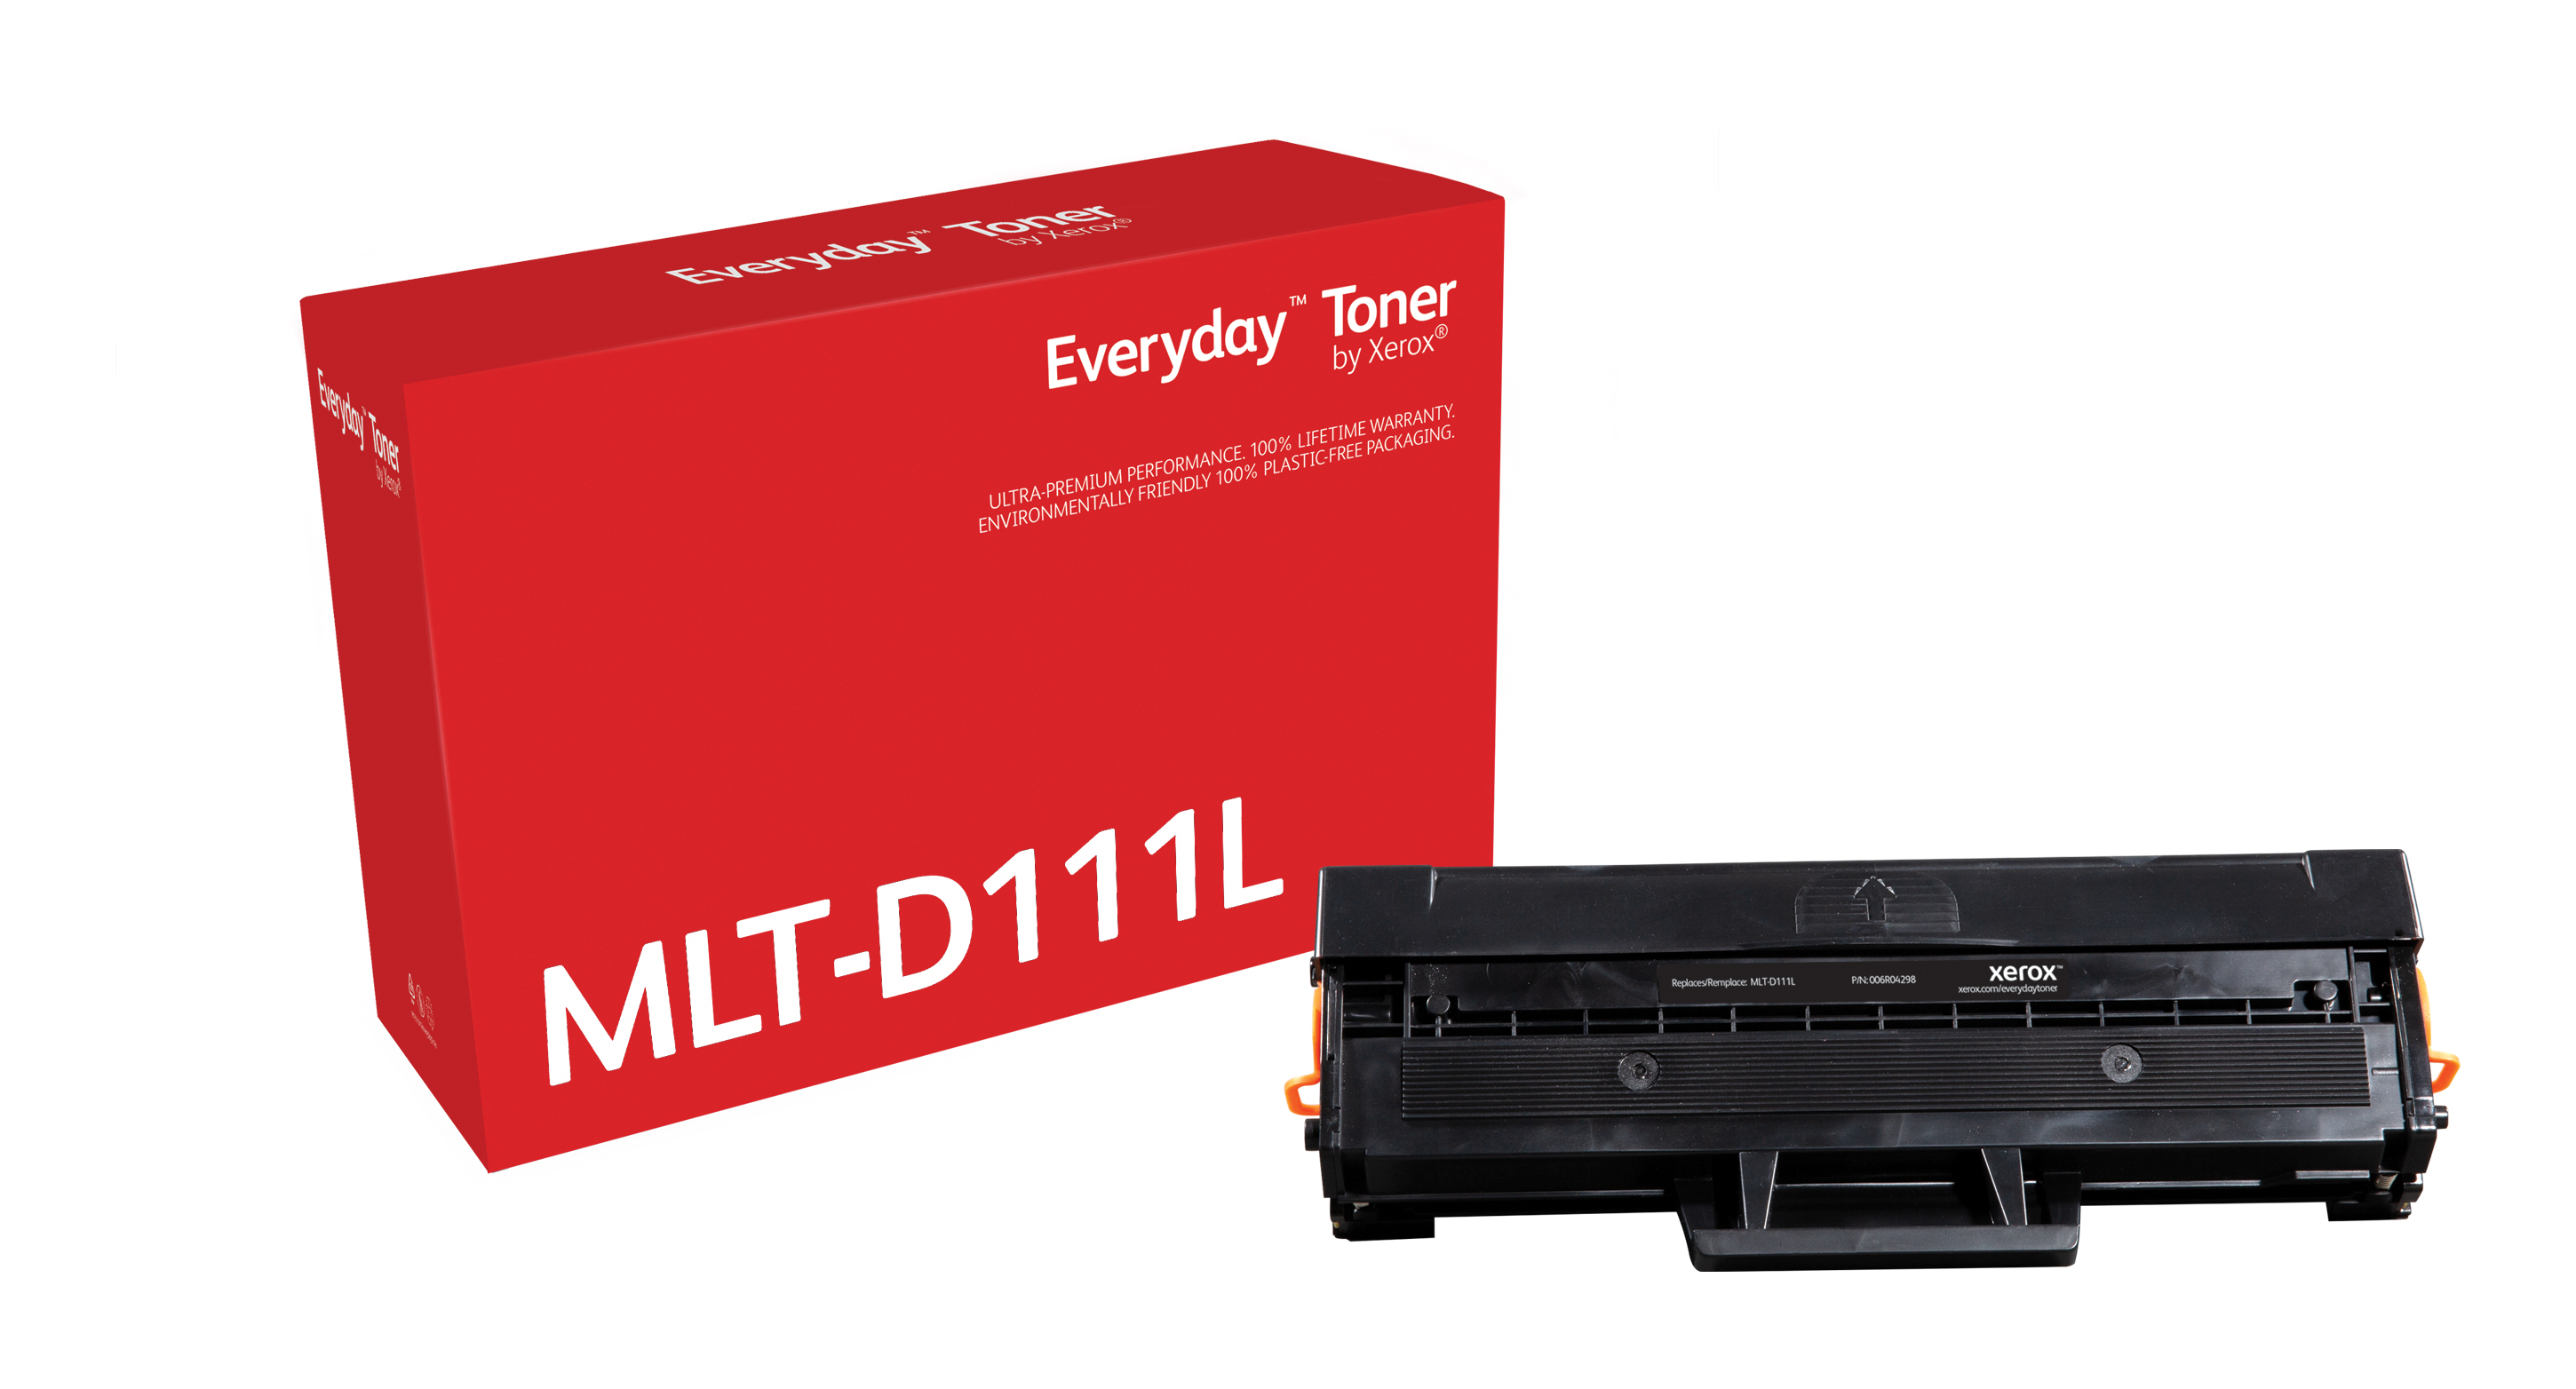 Toner Everyday Noir compatible avec Samsung MLT-D111L, Grande capacité  006R04298 by Xerox